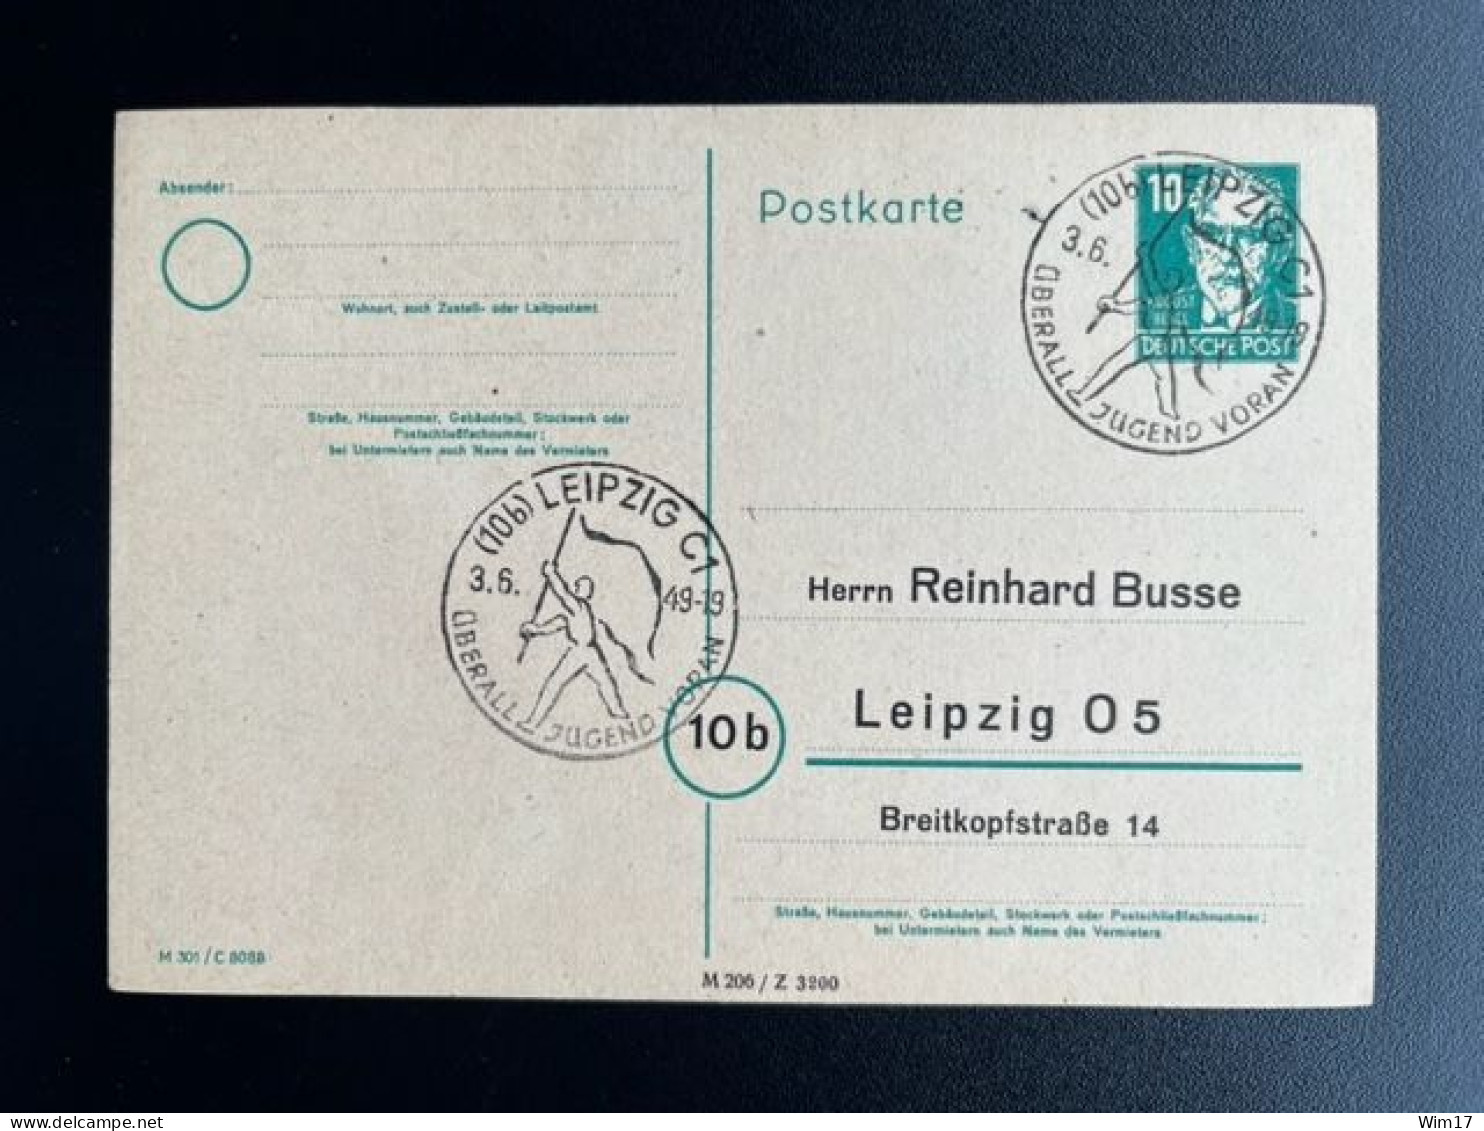 GERMANY 1949 POSTCARD LEIPZIG 03-06-1949 DUITSLAND DEUTSCHLAND SST UBERALL JUGEND VORAN - Ganzsachen